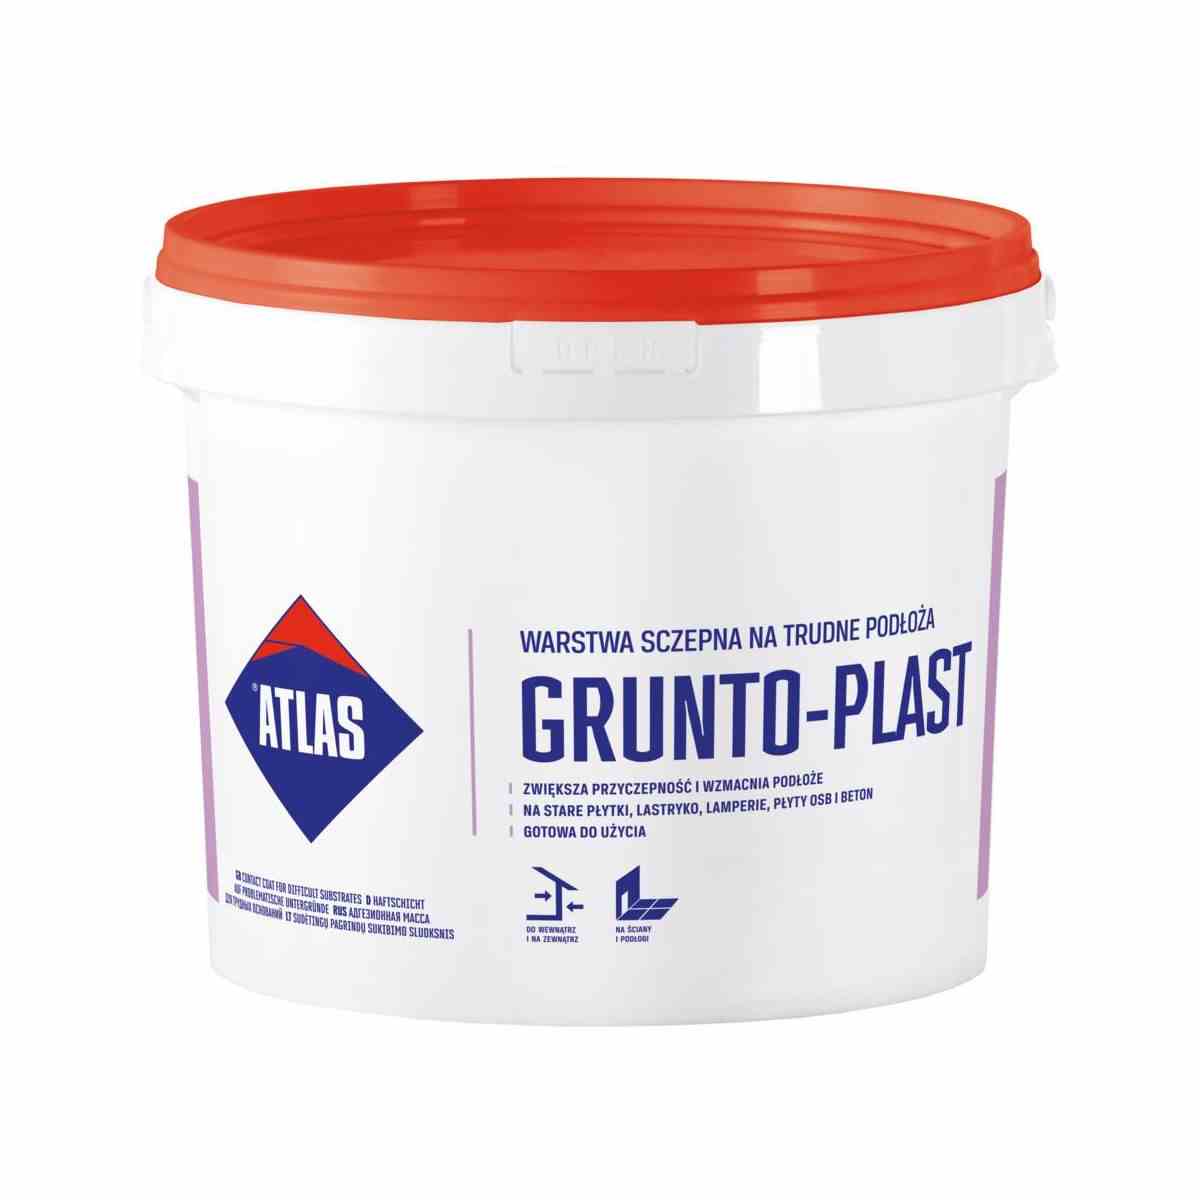 ATLAS GRUNTO-PLAST 5KG